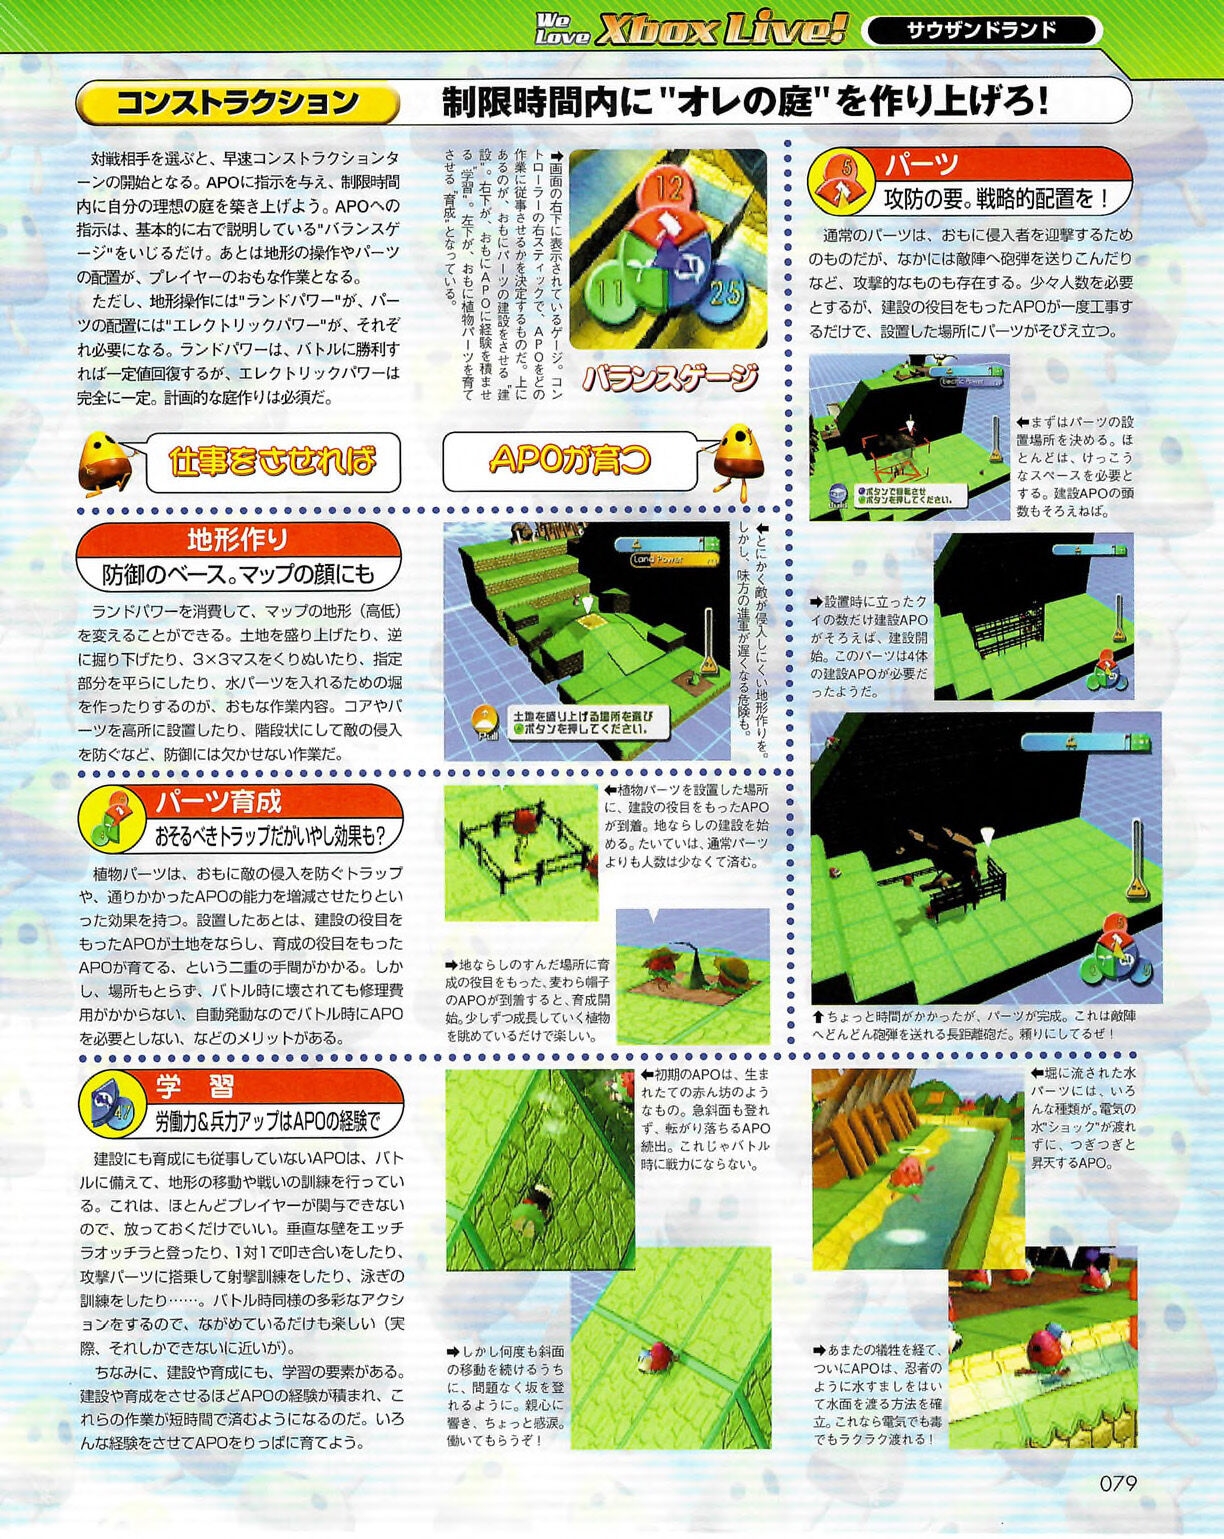 Famitsu_Xbox_2003-04_jp2 78